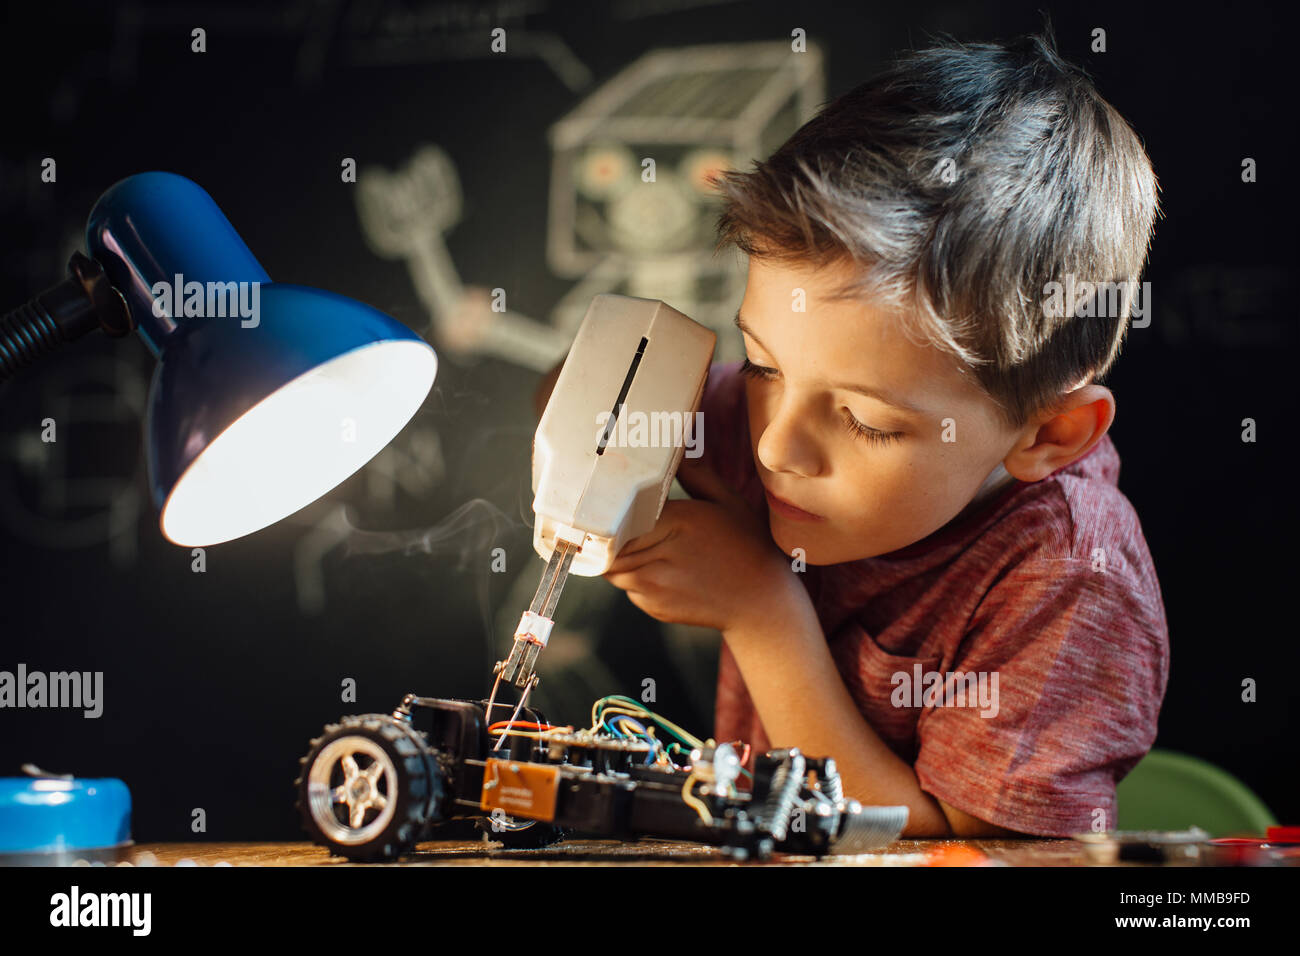 Schwerpunkt junge seinen löten Hobby genießen. Handliche Kind arbeiten auf seinem elektronischen Projekt mit einem Lötkolben. Stockfoto